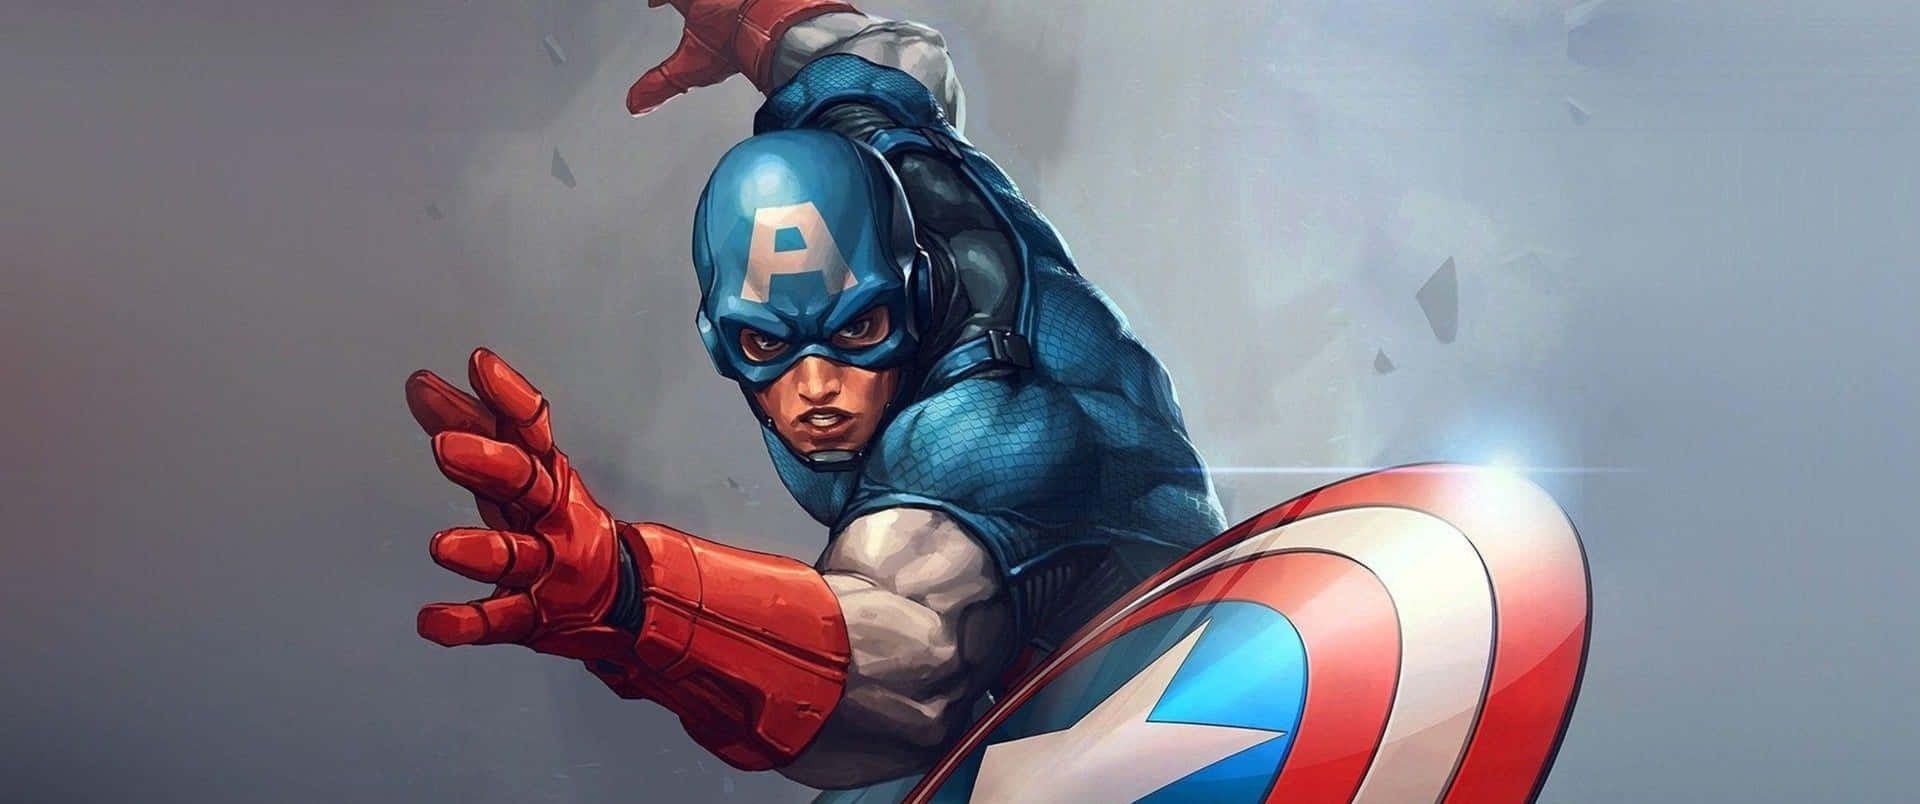 Captain America Armed for Battle